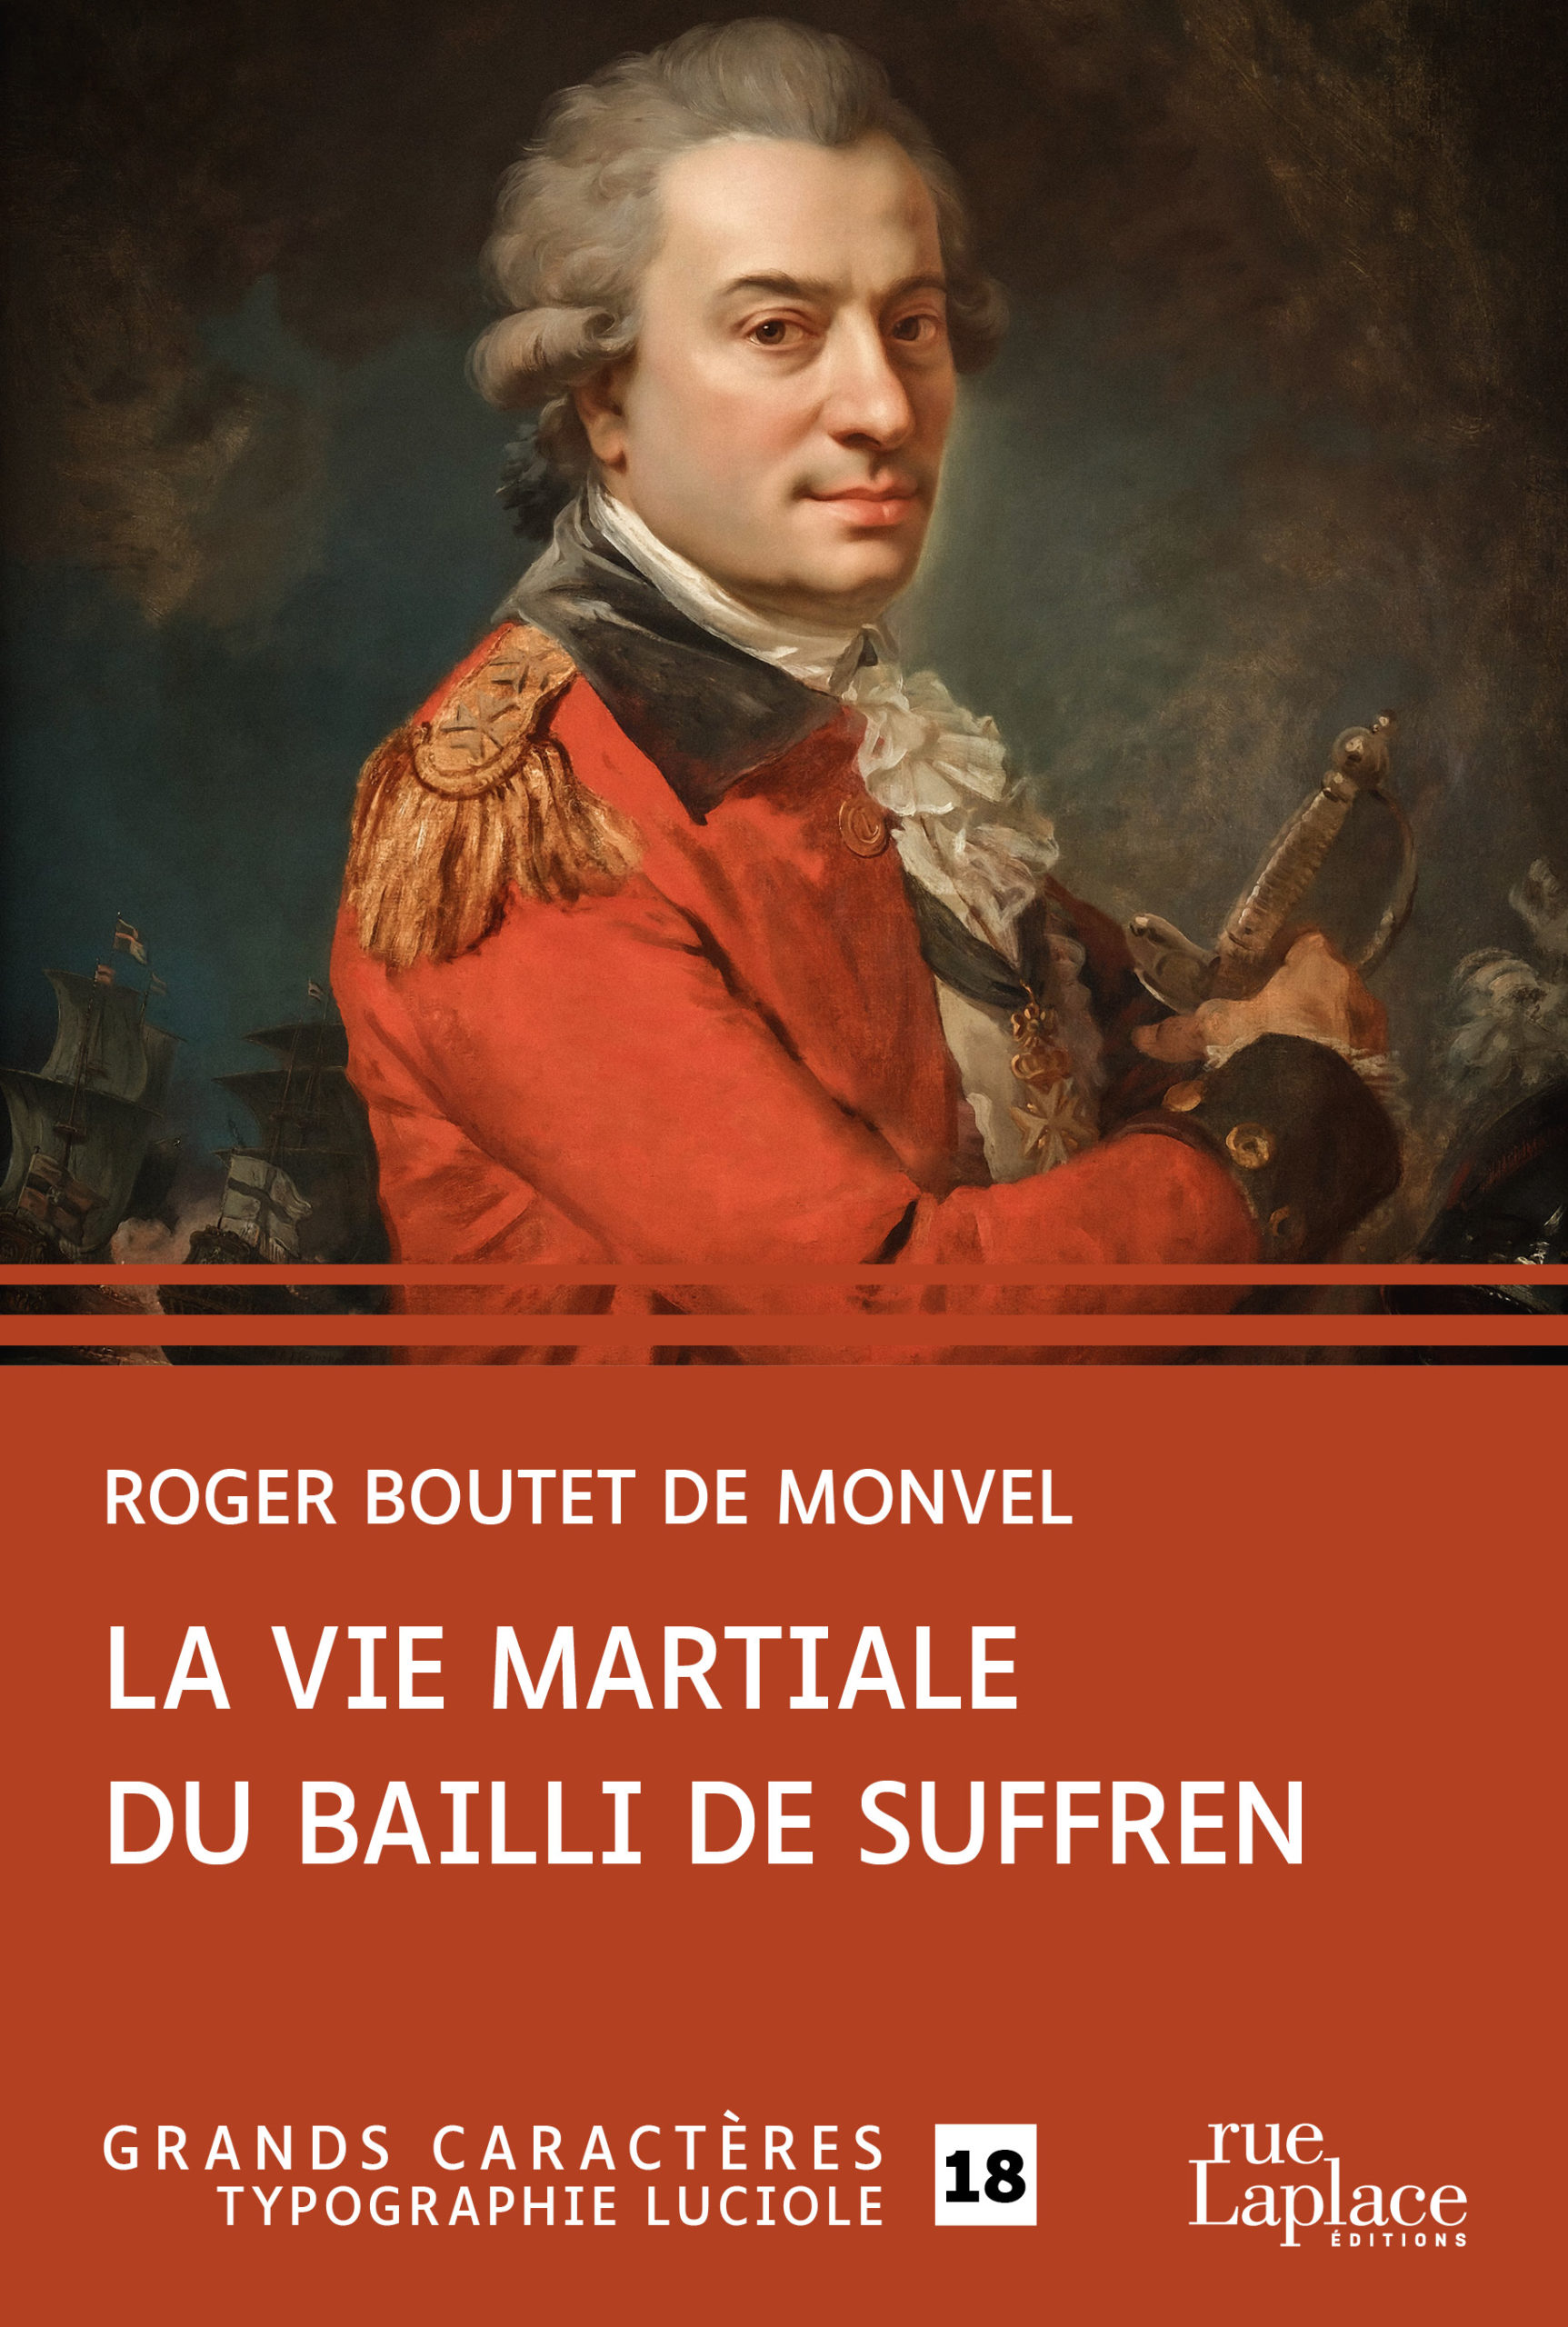 Couverture de La Vie martiale du Bailly de Suffren, de Roger Boutet de Monvel